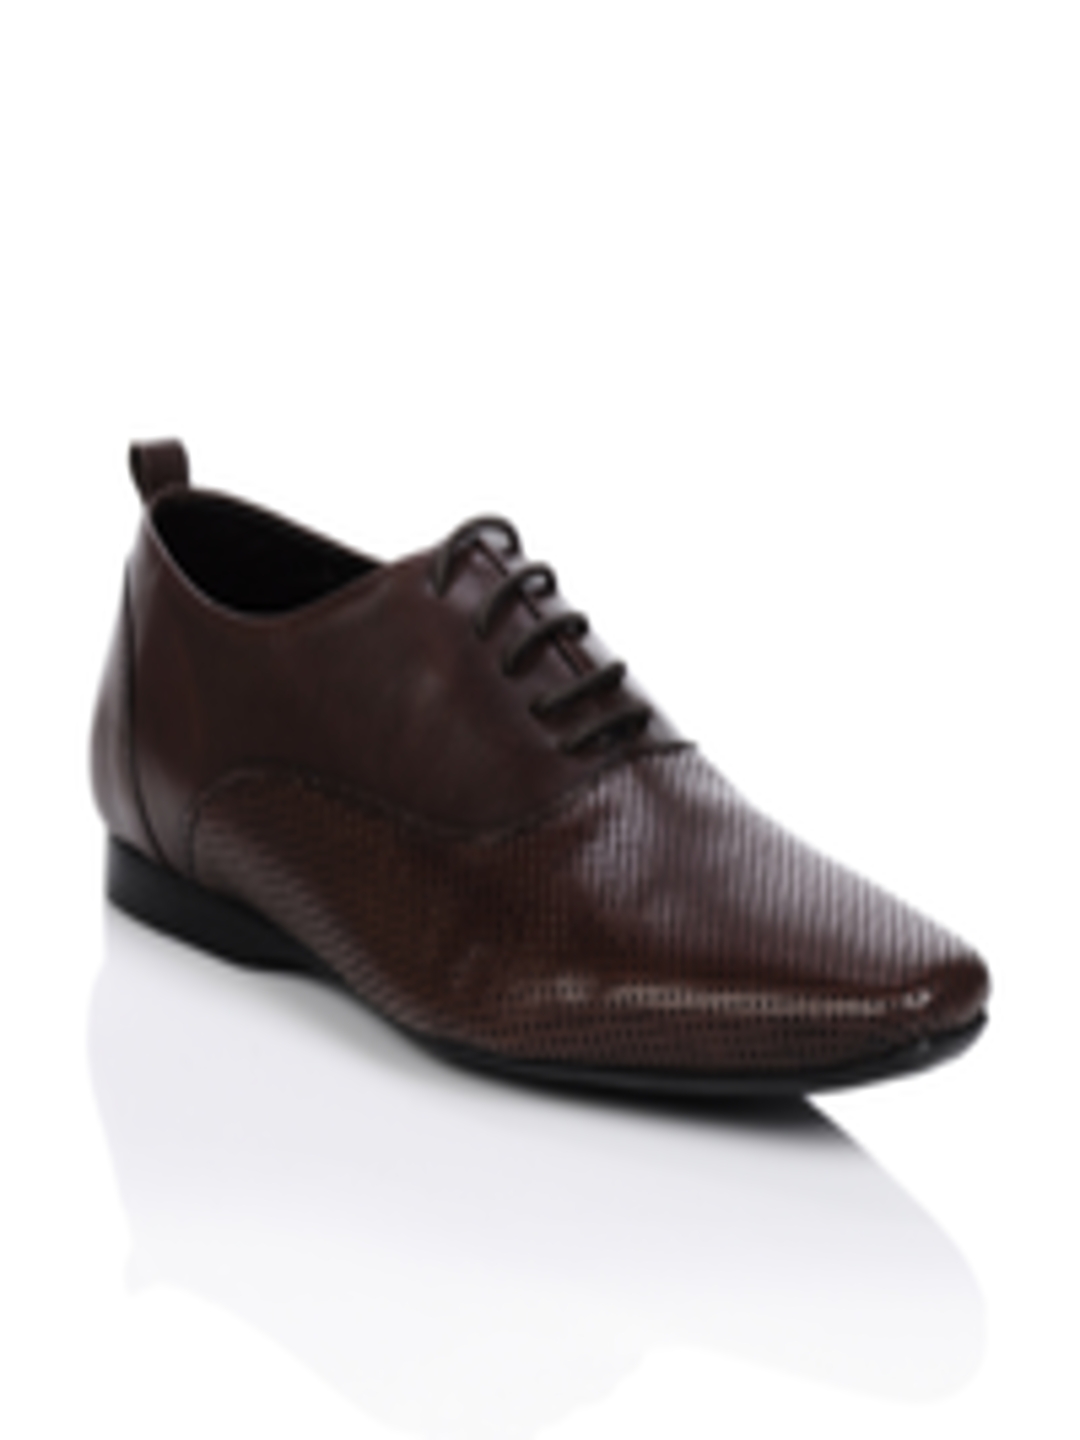 Buy Franco Leone Men Brown Formal Shoes - Formal Shoes for Men 31327 ...